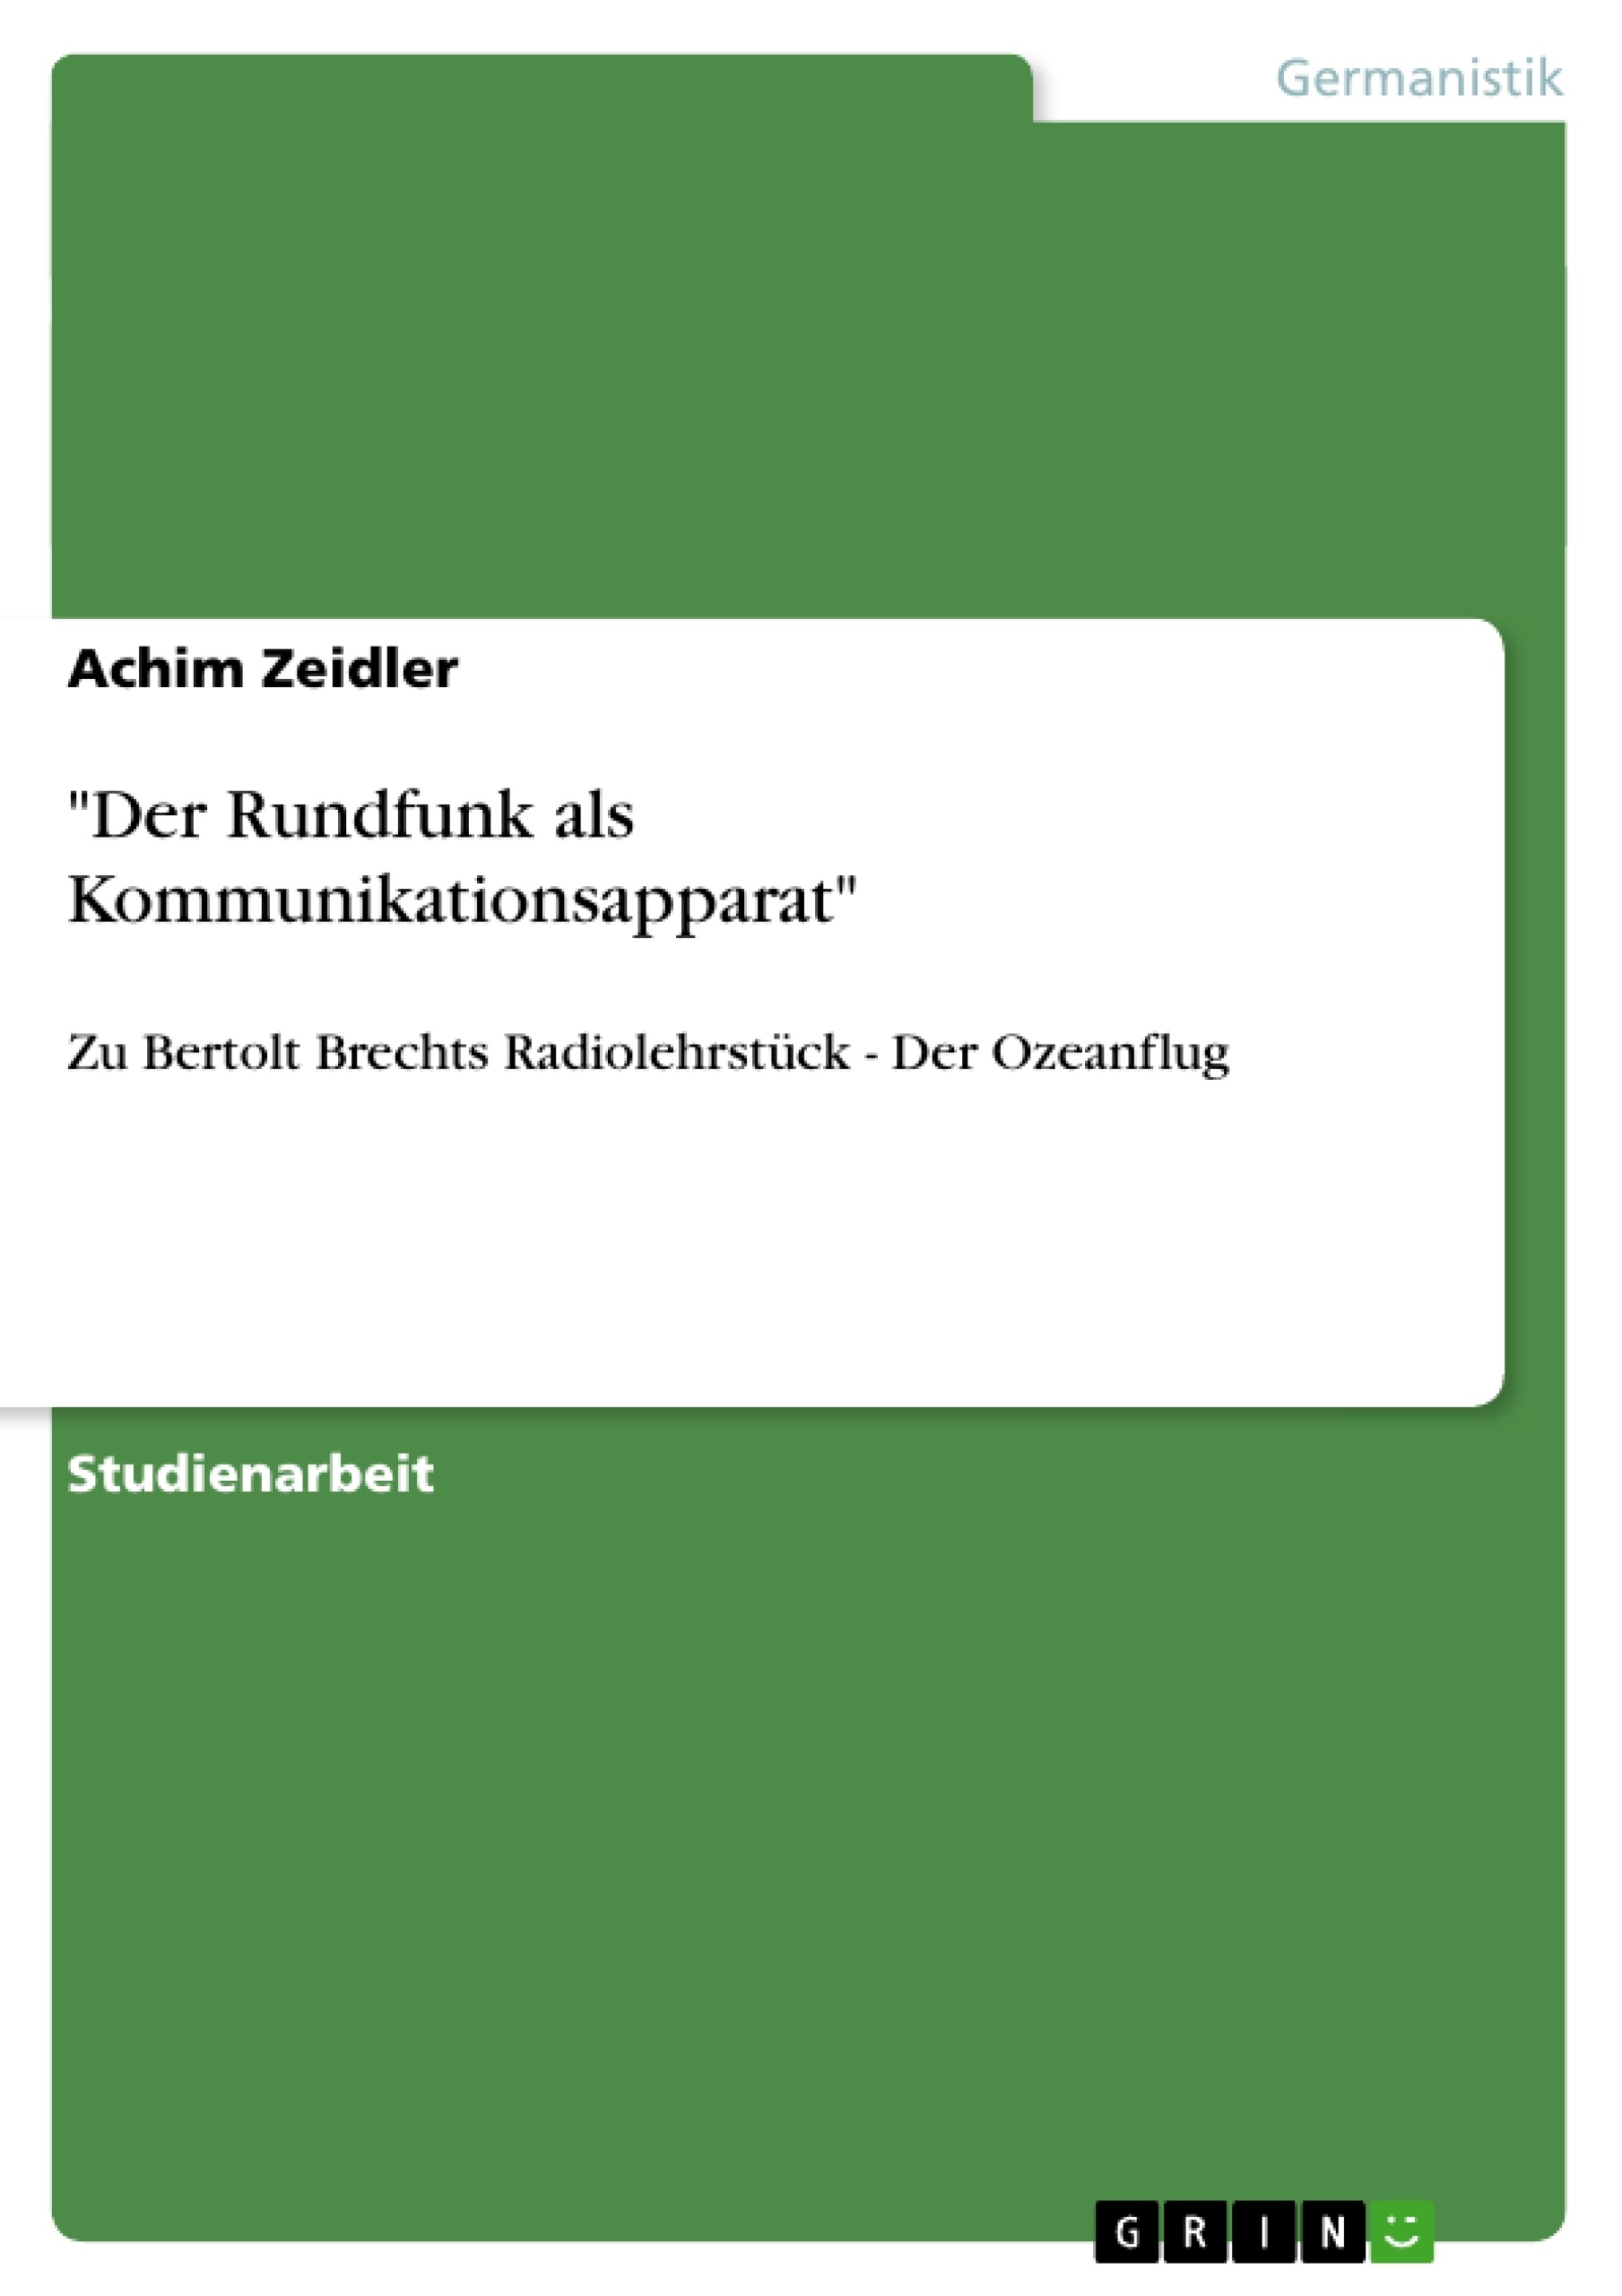 Title: "Der Rundfunk als Kommunikationsapparat"